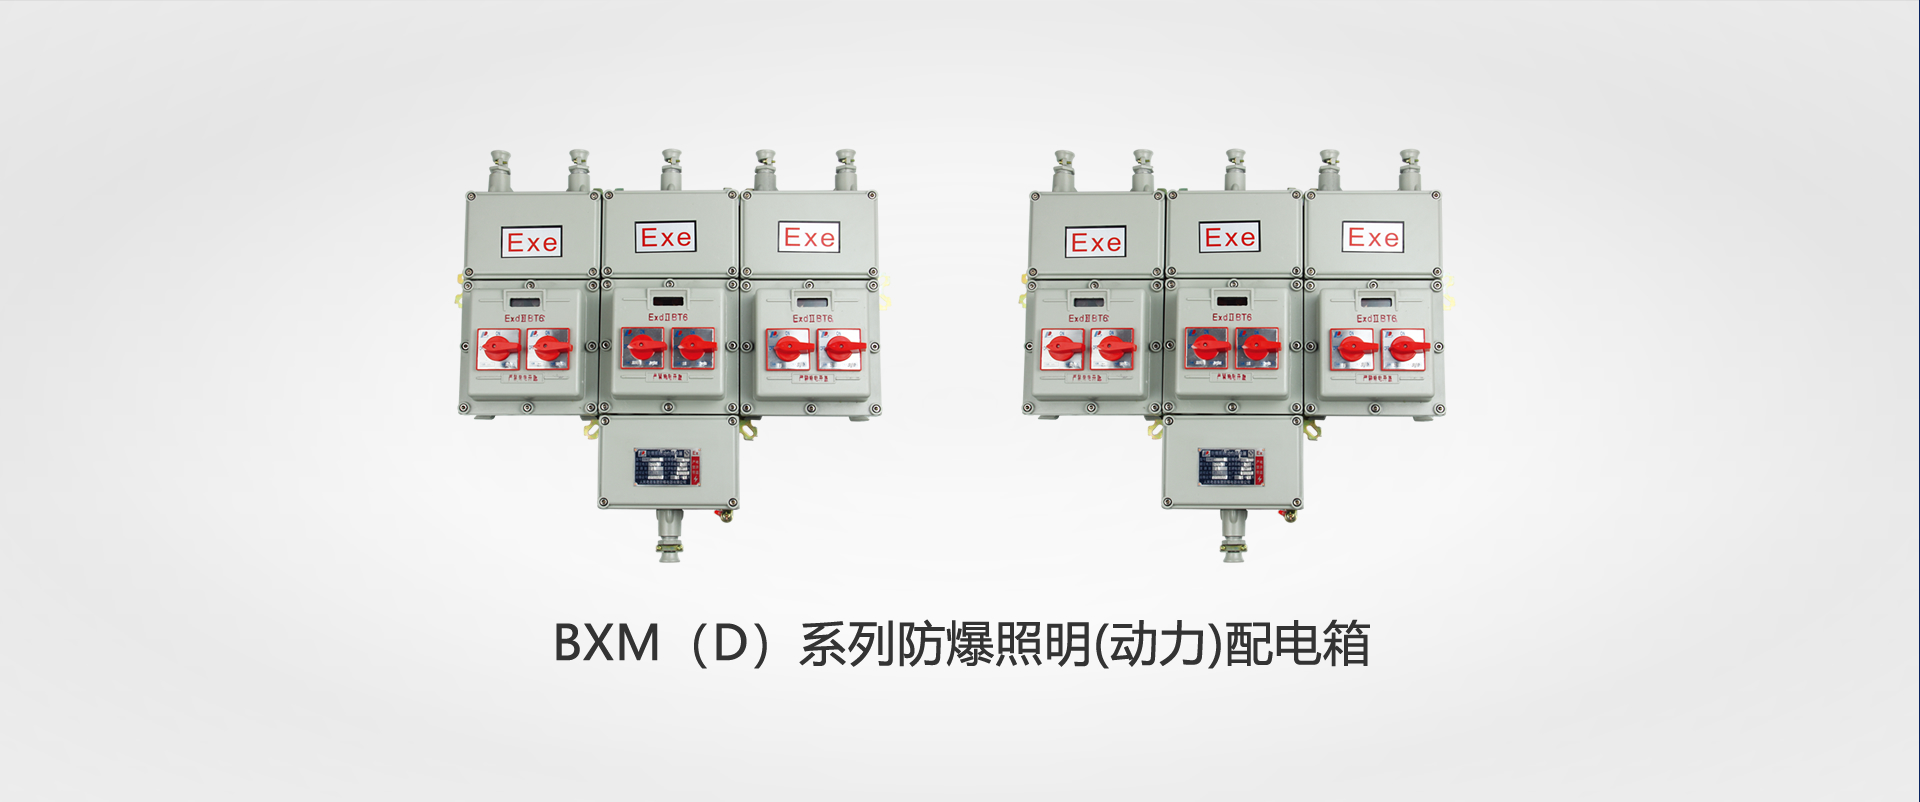 BXM（D）系列防爆照明(動力(li))配(pei)電箱